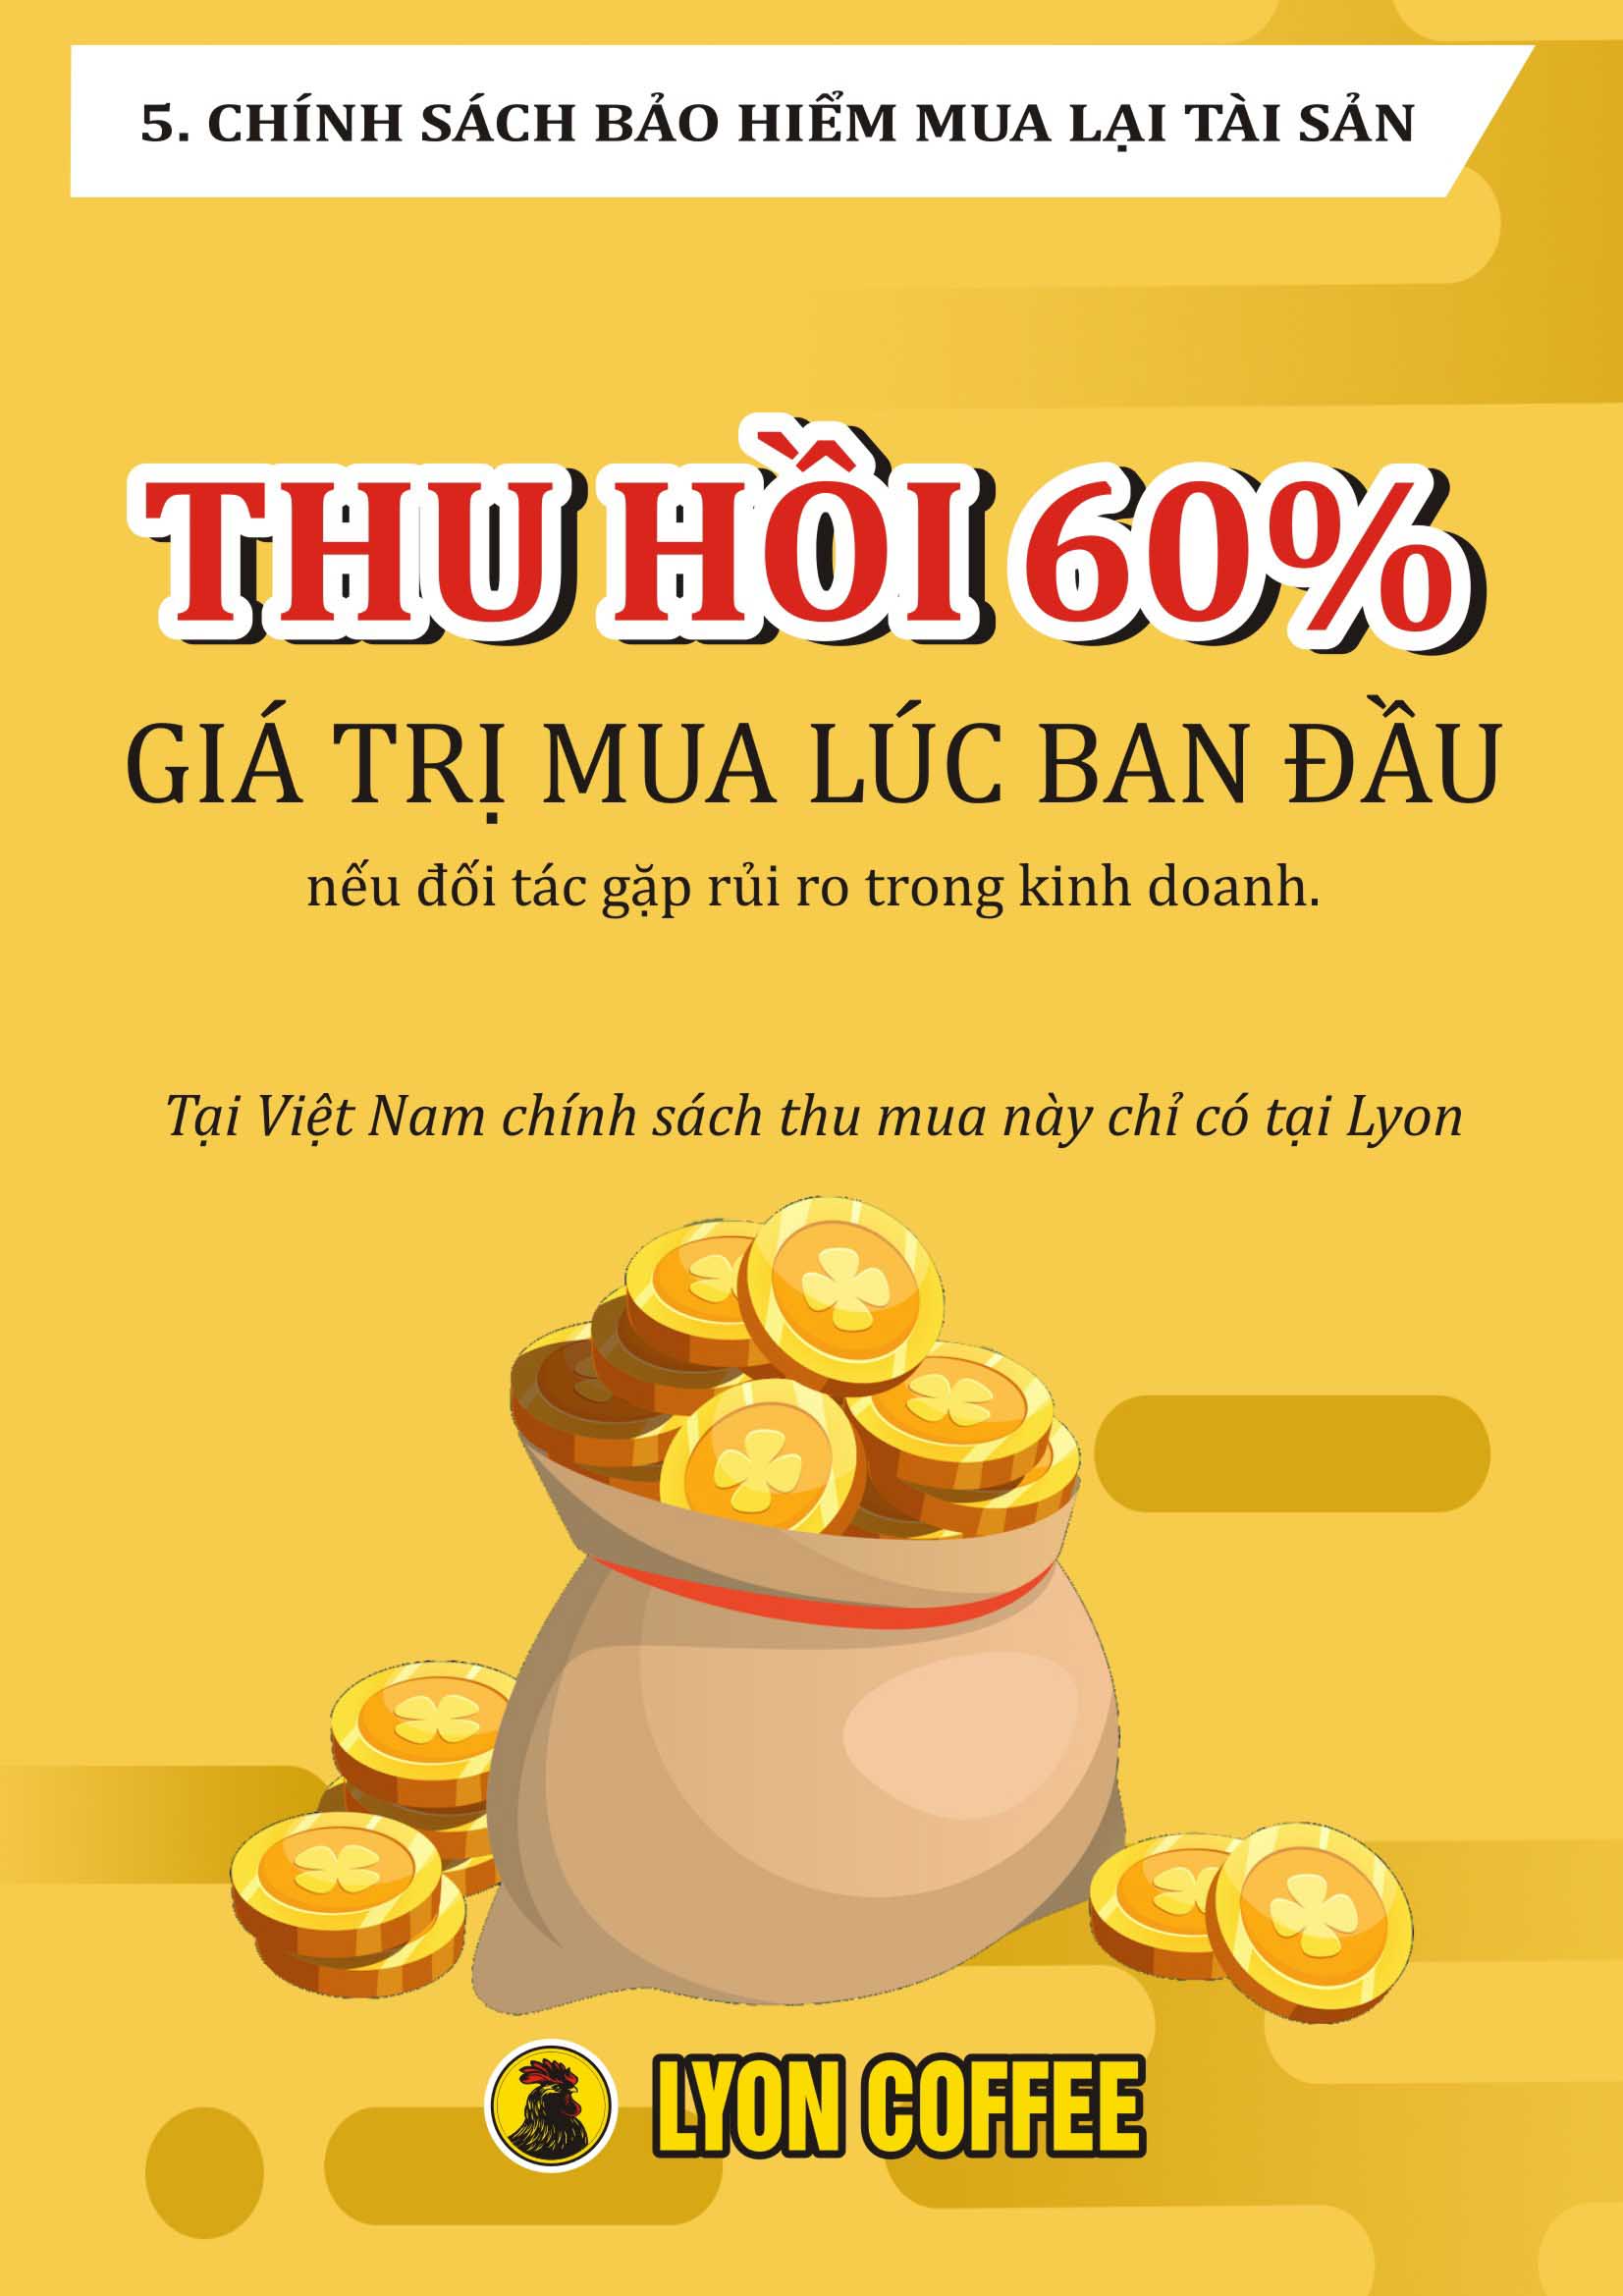 Tại Việt Nam, chỉ Lyon Coffee mới có chính sách thu hồi 60% 